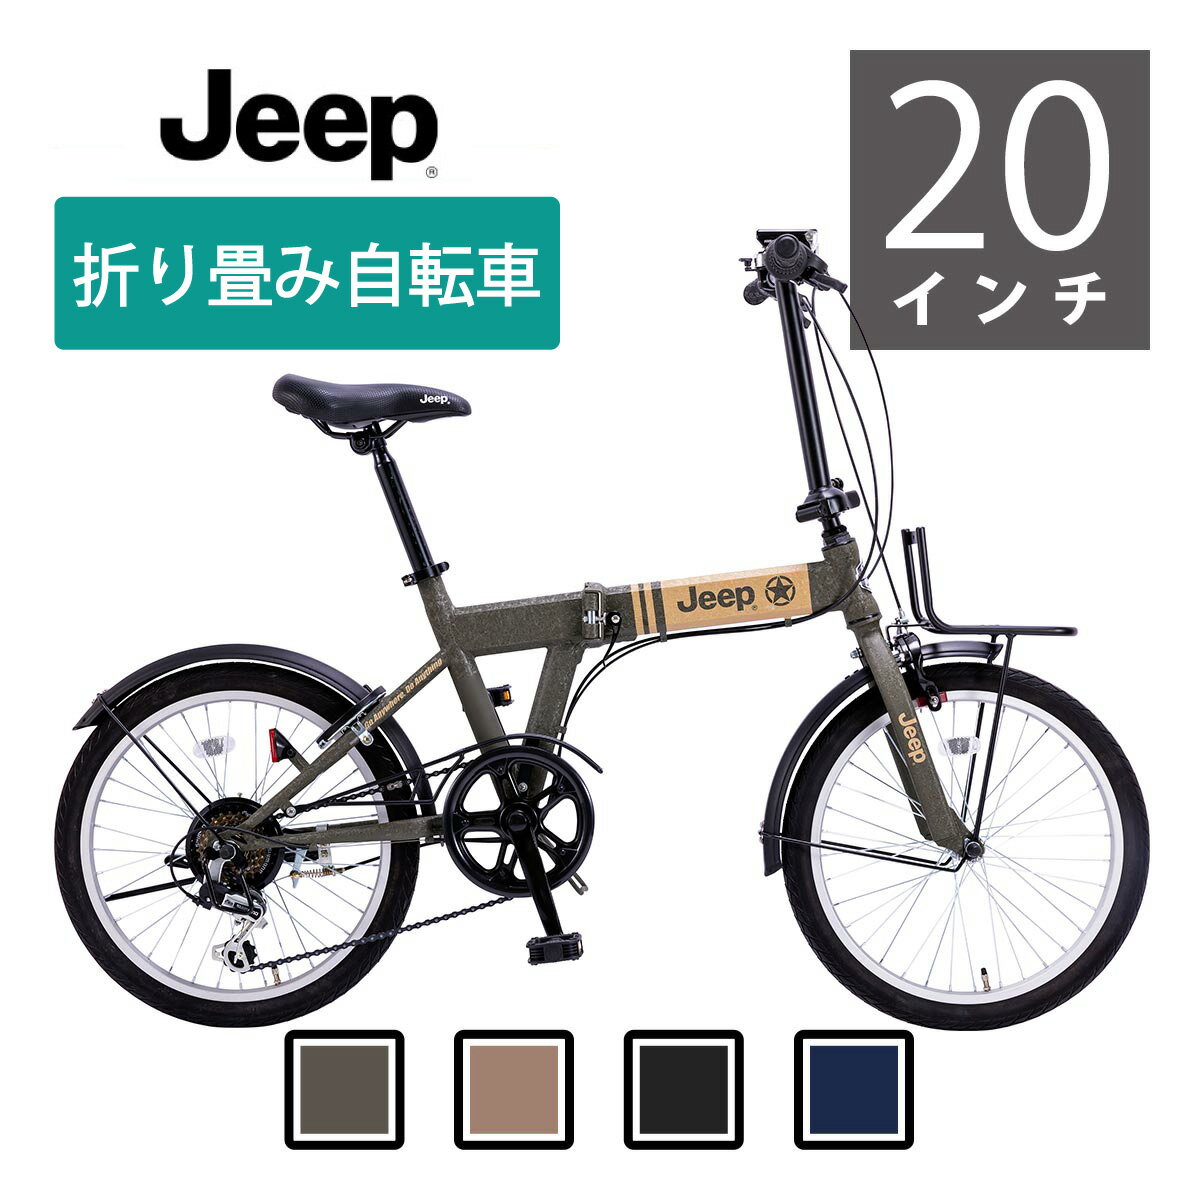 安い自転車 jeepの通販商品を比較 | ショッピング情報のオークファン